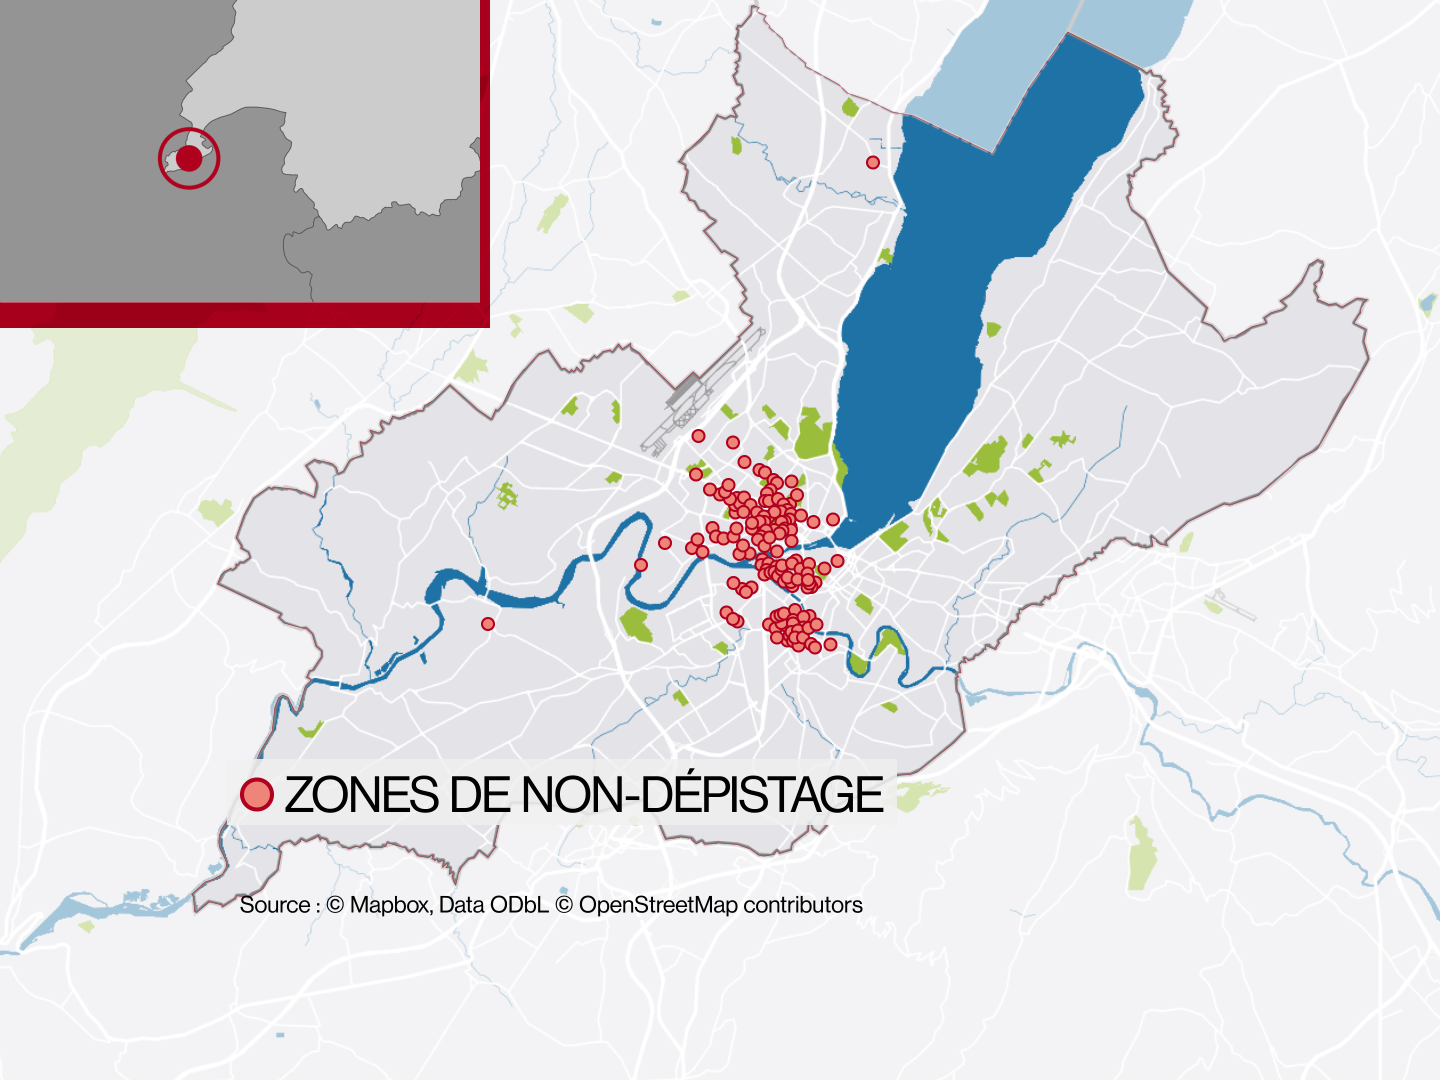 La carte des zones de non-dépistage du cancer du sein à Genève, élaborée dans le sillage de l'étude des HUG et de l'EPFL. [Mapbox, Data ODbl, OpenStreetMap contributors]